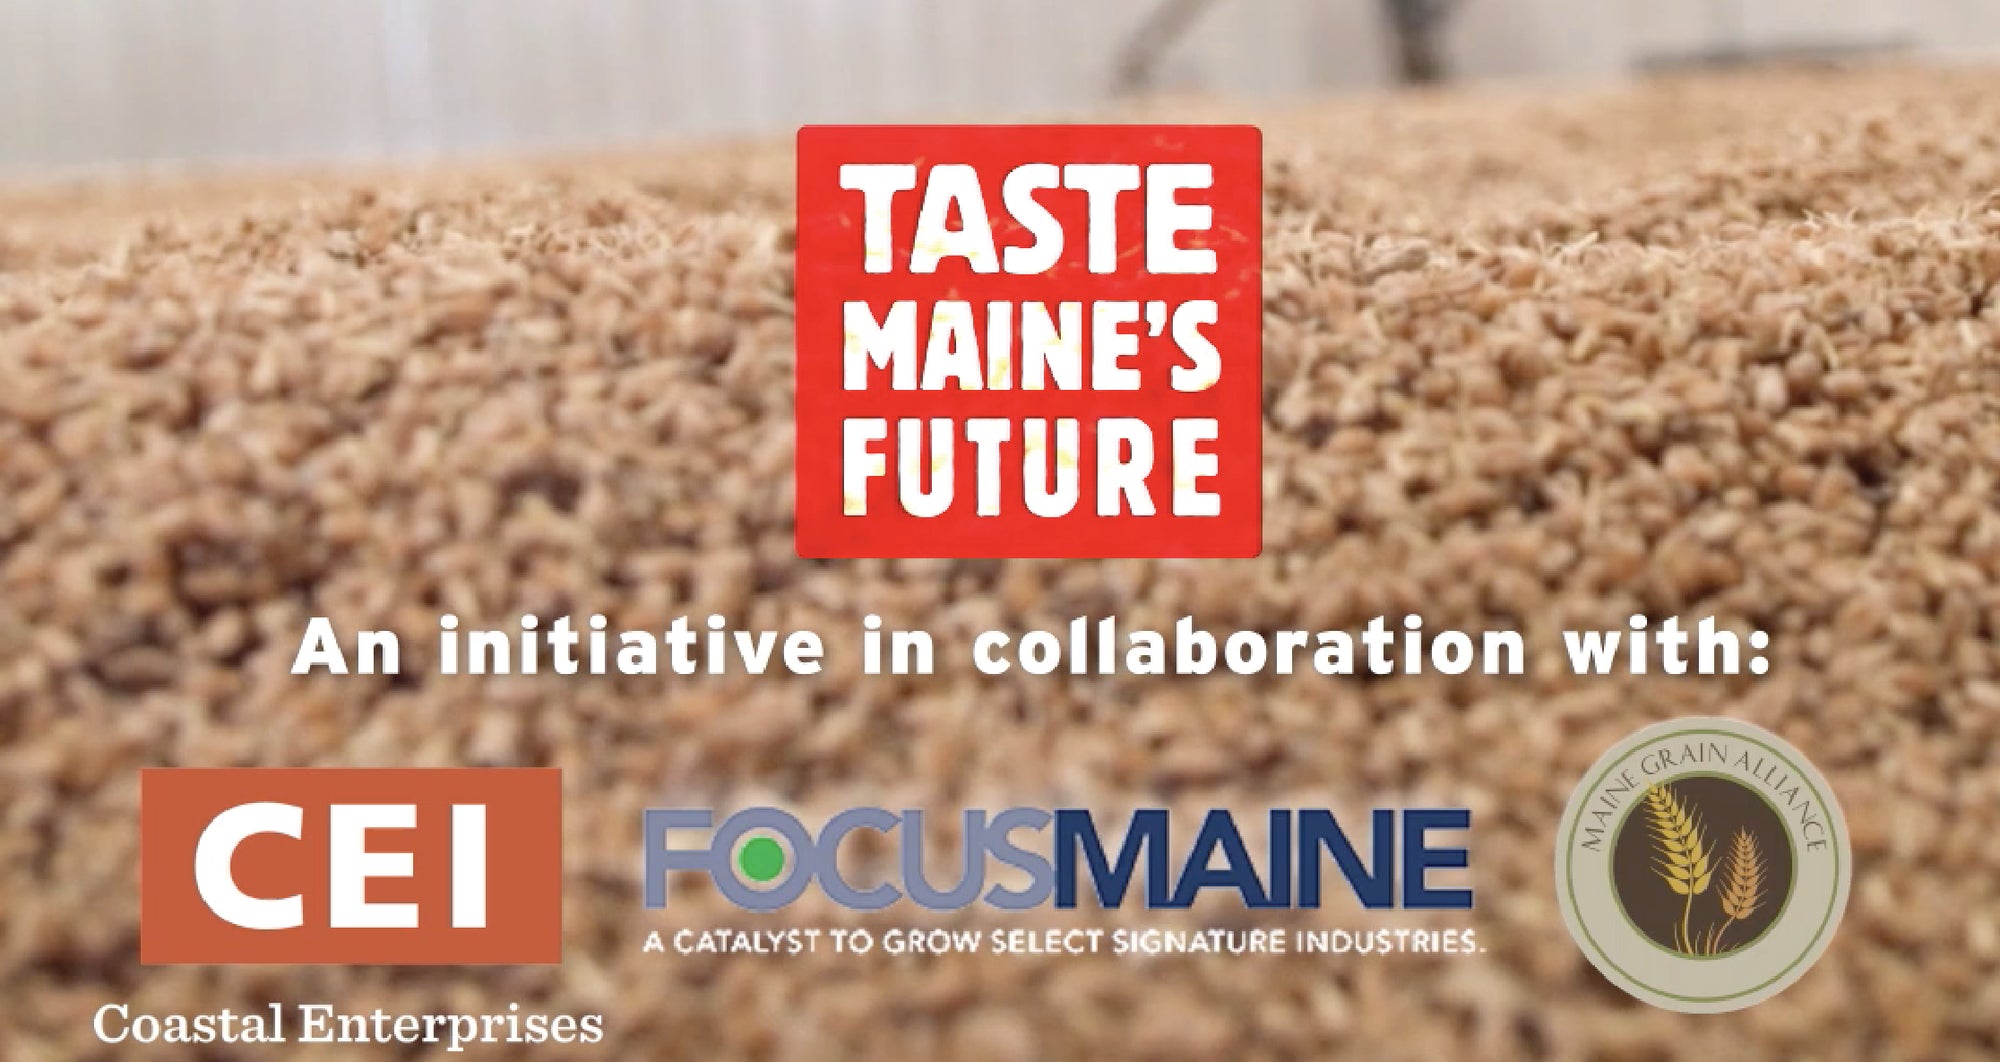 CEI/Focus Maine Tastemakers Investor Tour Kicks Off At Maine Crisp